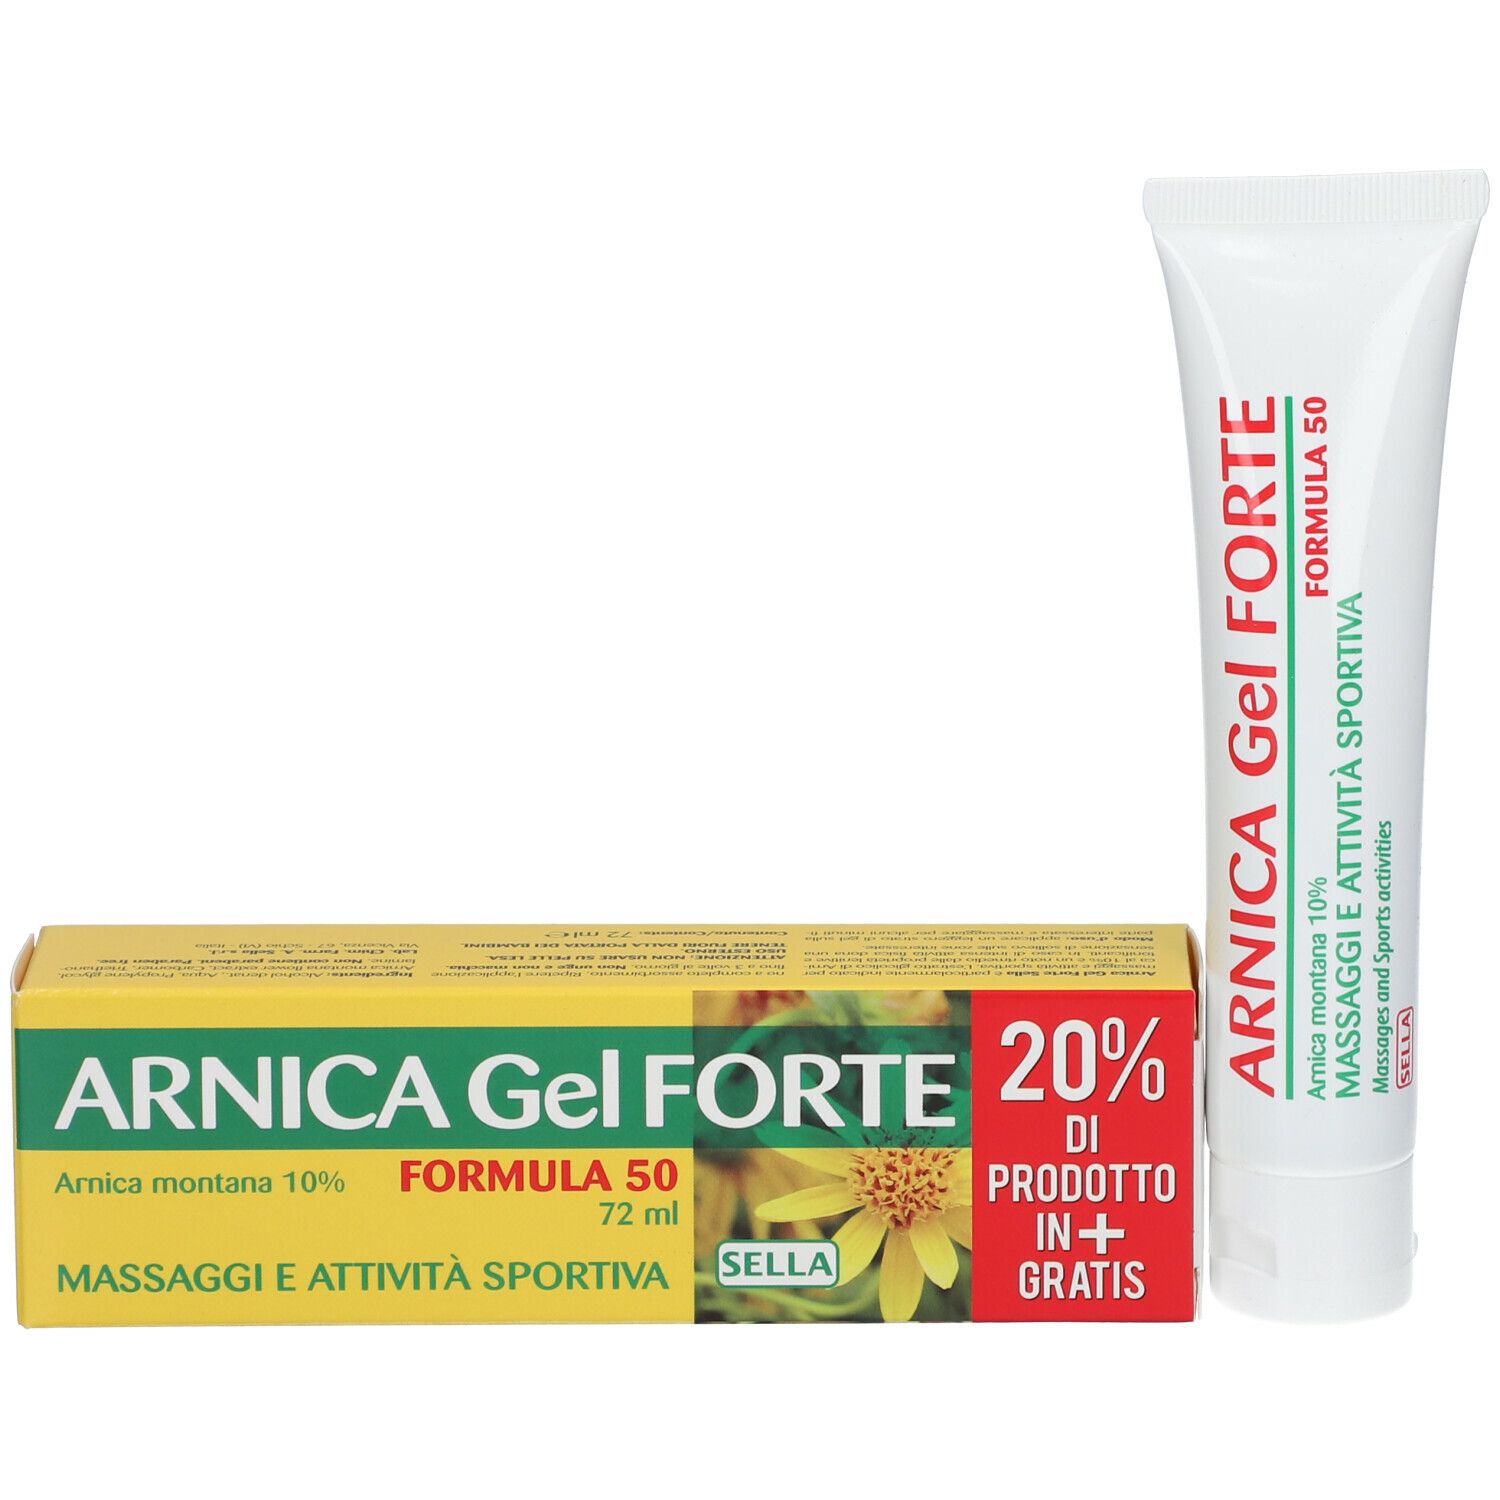 Arnica 10% Gel Forte Formula 50 Gel Lenitivo Per Traumi 72 ml